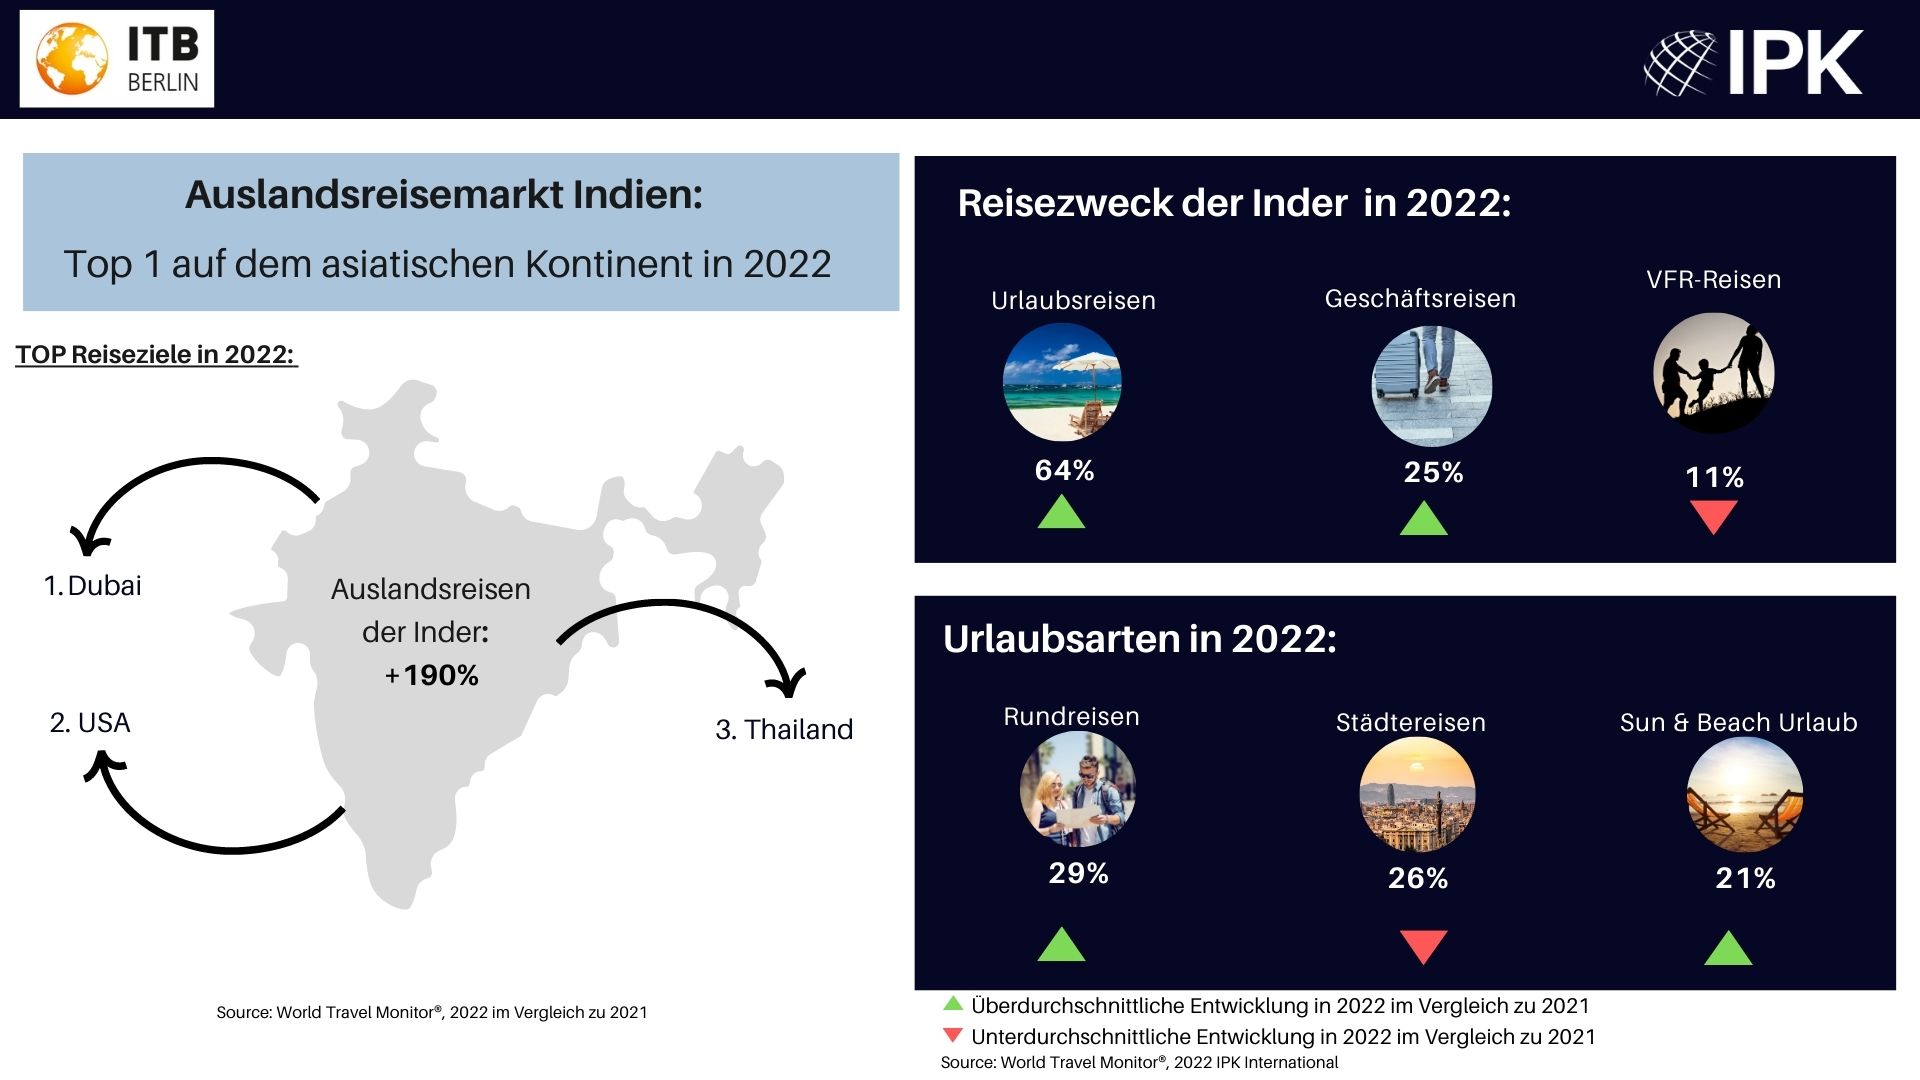 ITB Berlin und IPK International: Auslandsreisen der Inder in 2022